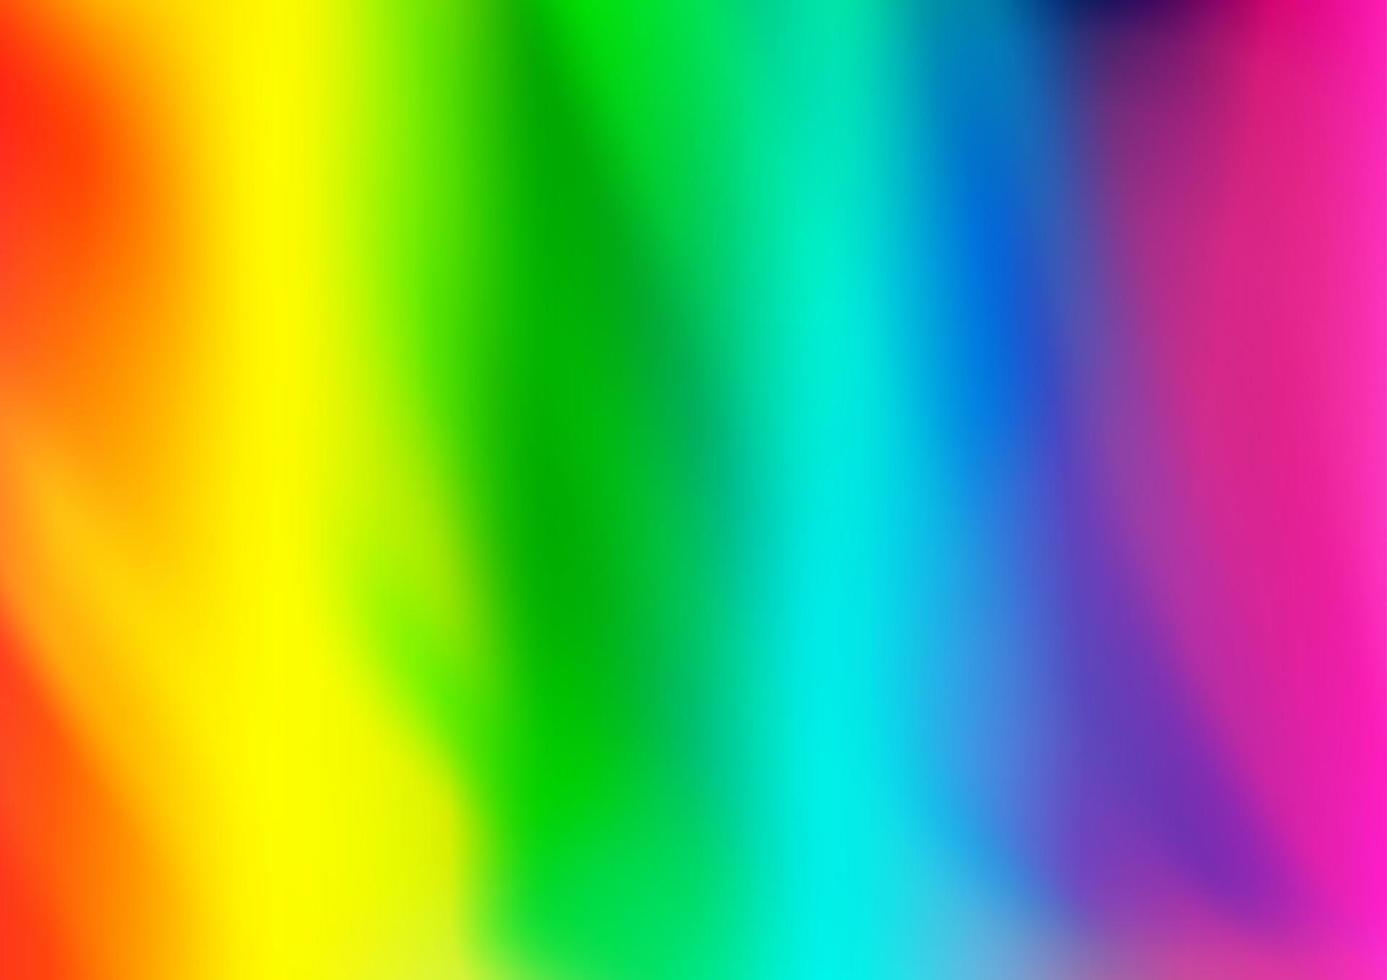 luz multicolor, fundo brilhante do sumário do vetor do arco-íris.